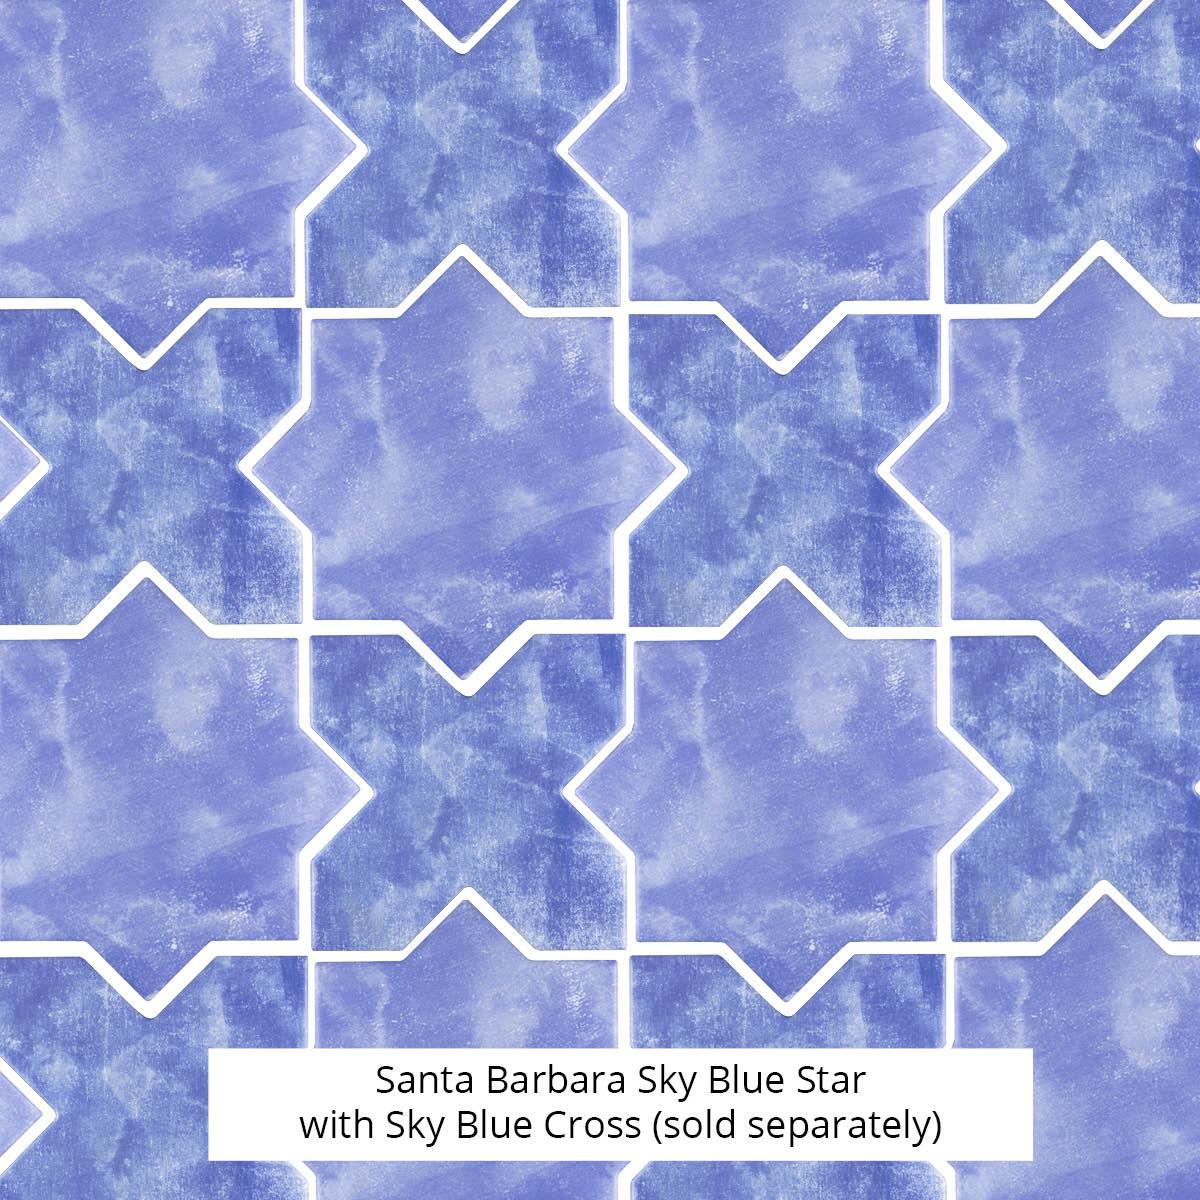 Santa Barbara Sky Blue Star